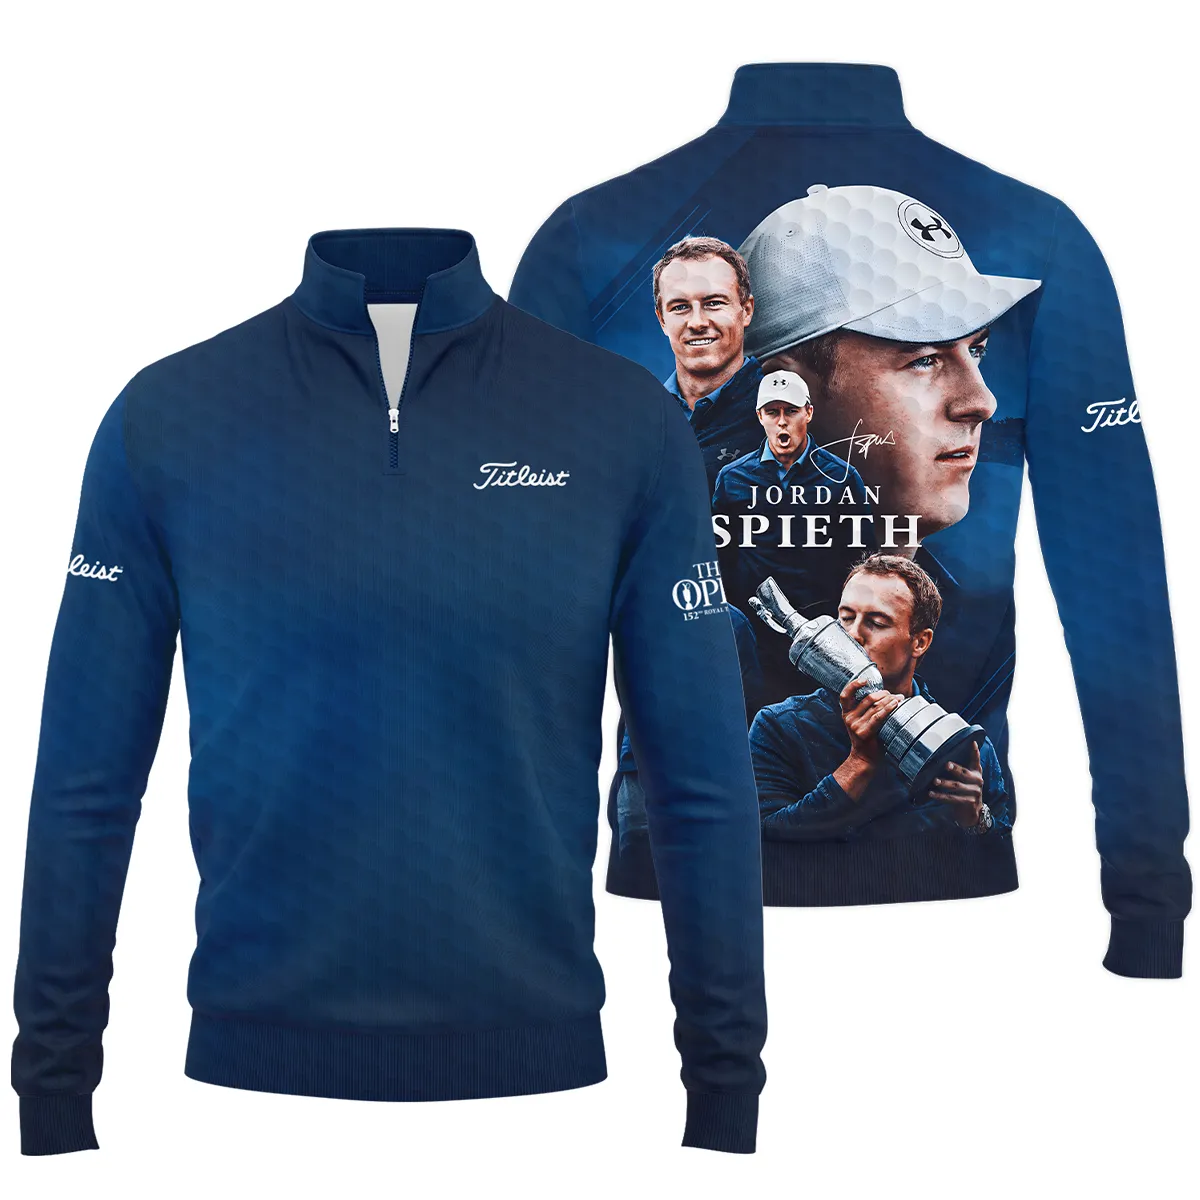 Golf Jordan Spieth Fans Loves 152nd The Open Championship Titleist Zipper Hoodie Shirt Style Classic